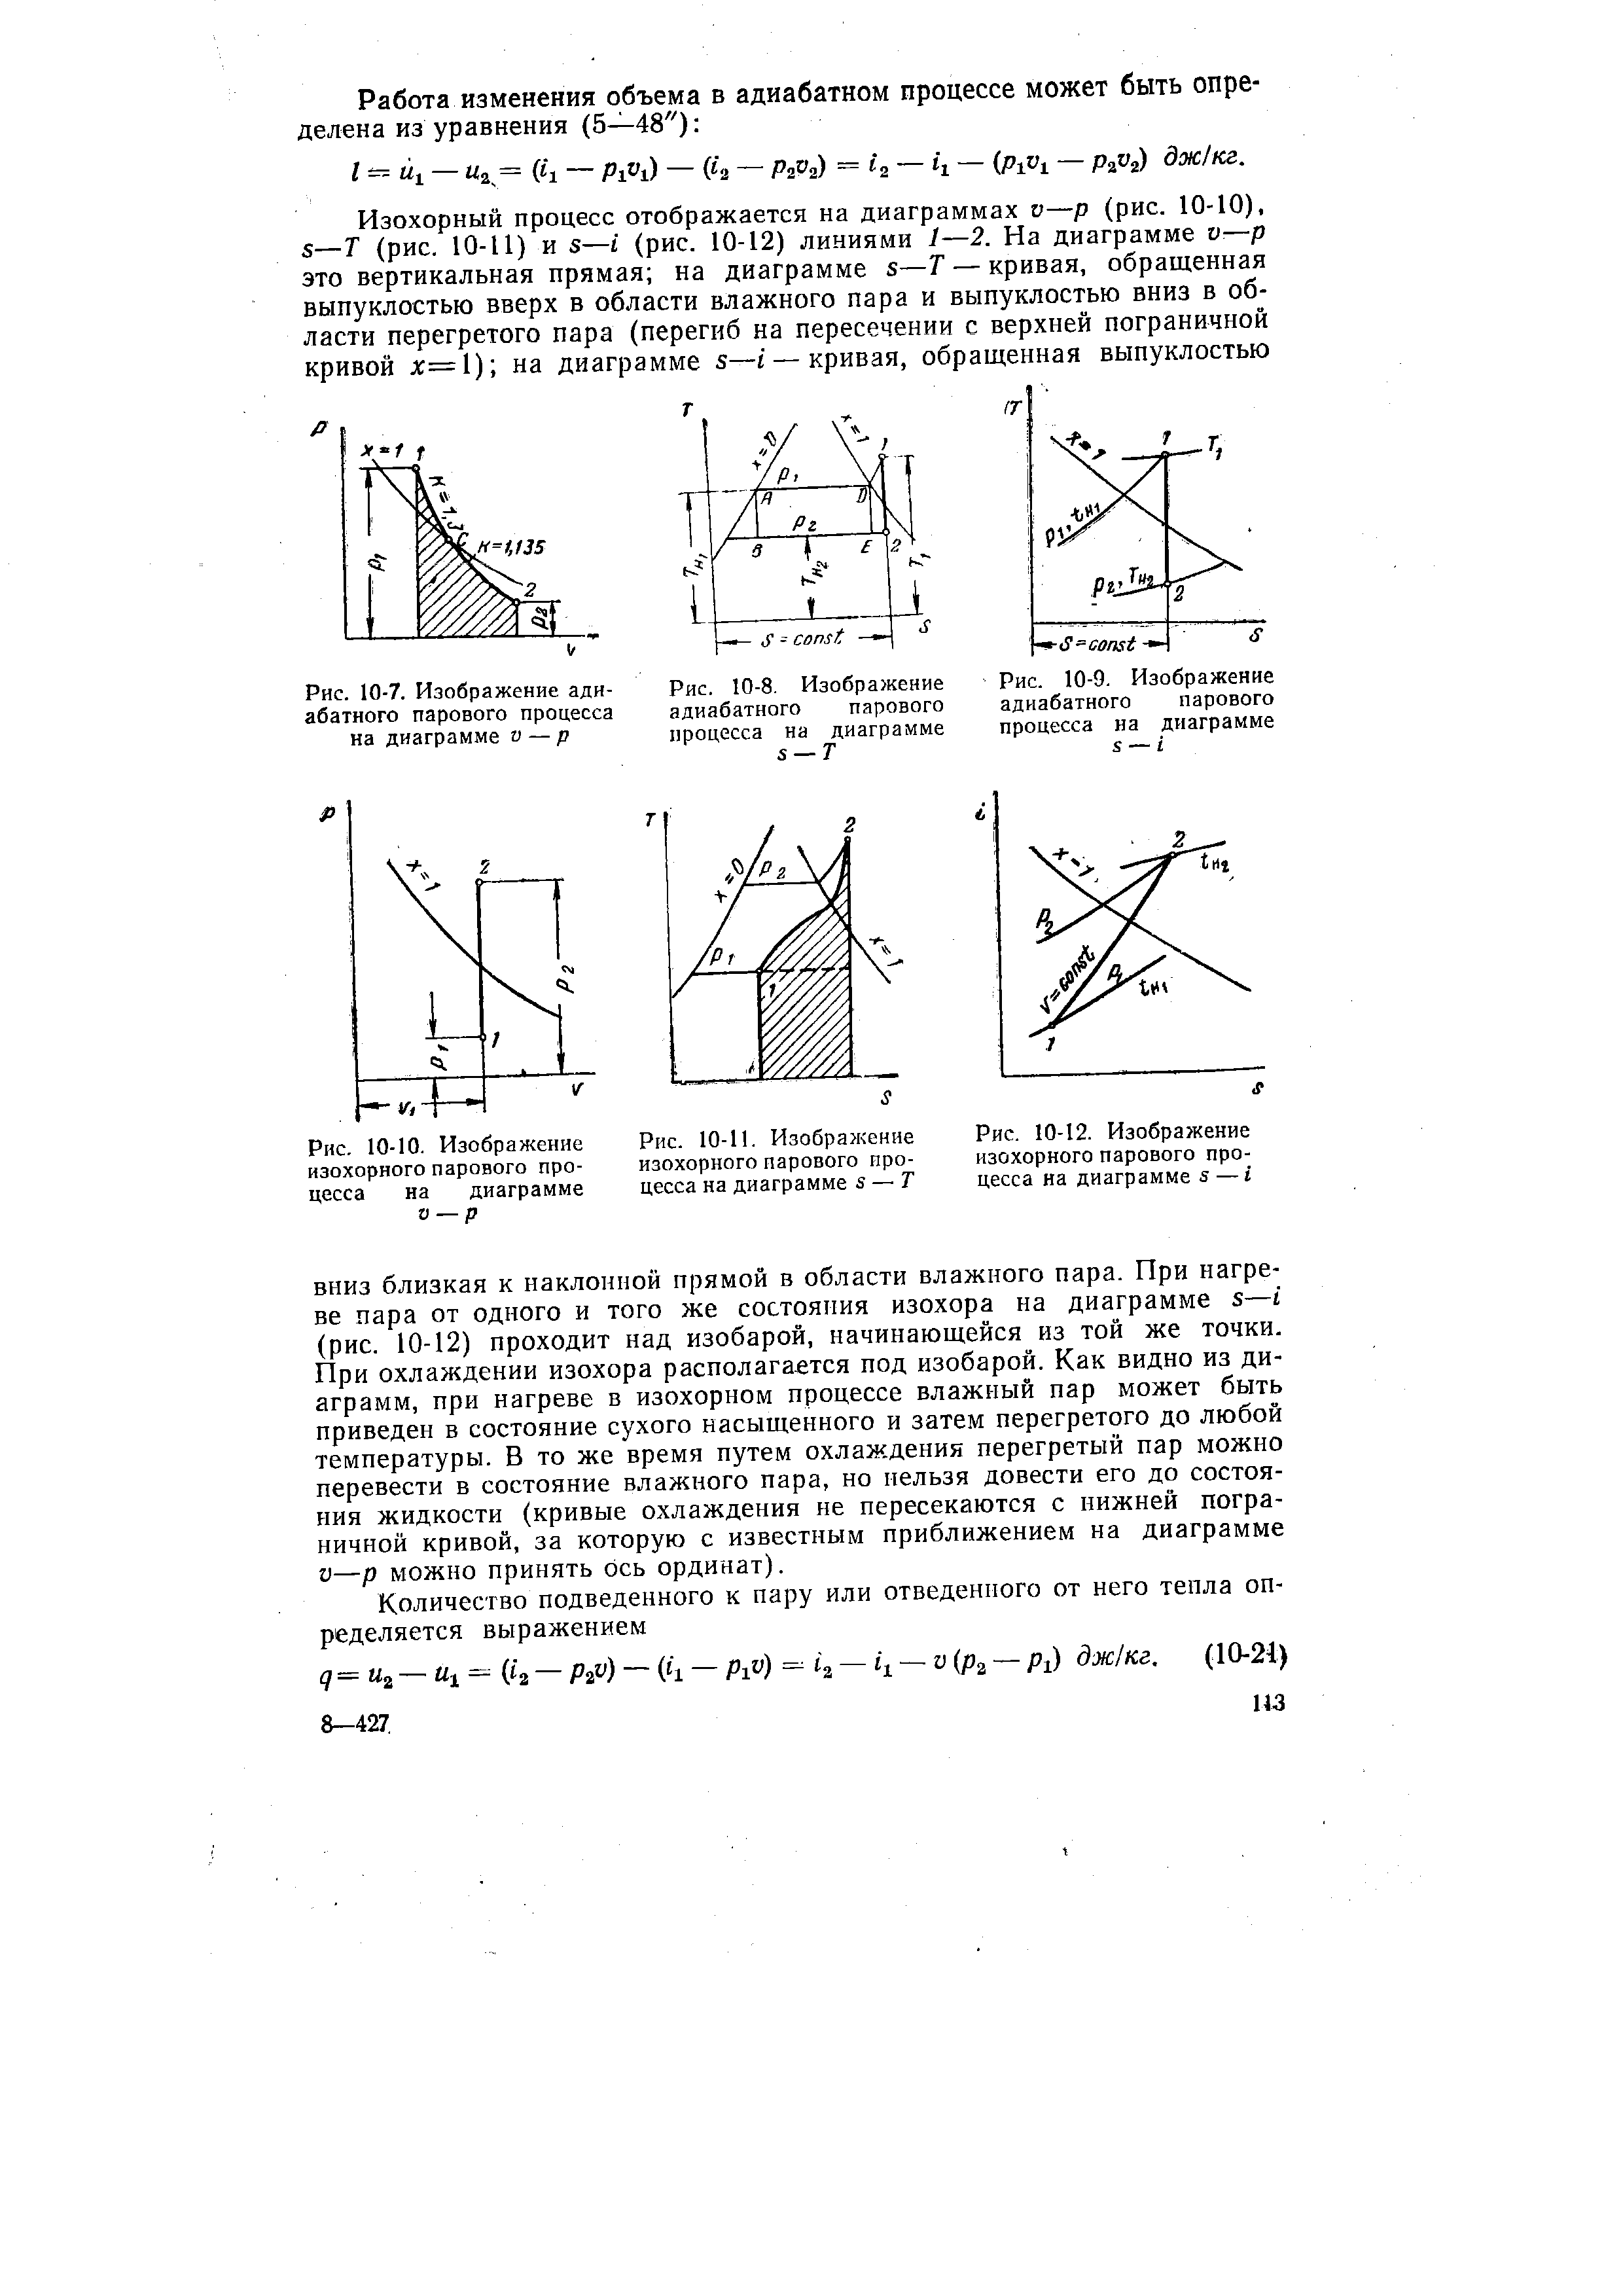 Рис. 10-7. Изображение адиабатного парового процесса на диаграмме v — р
